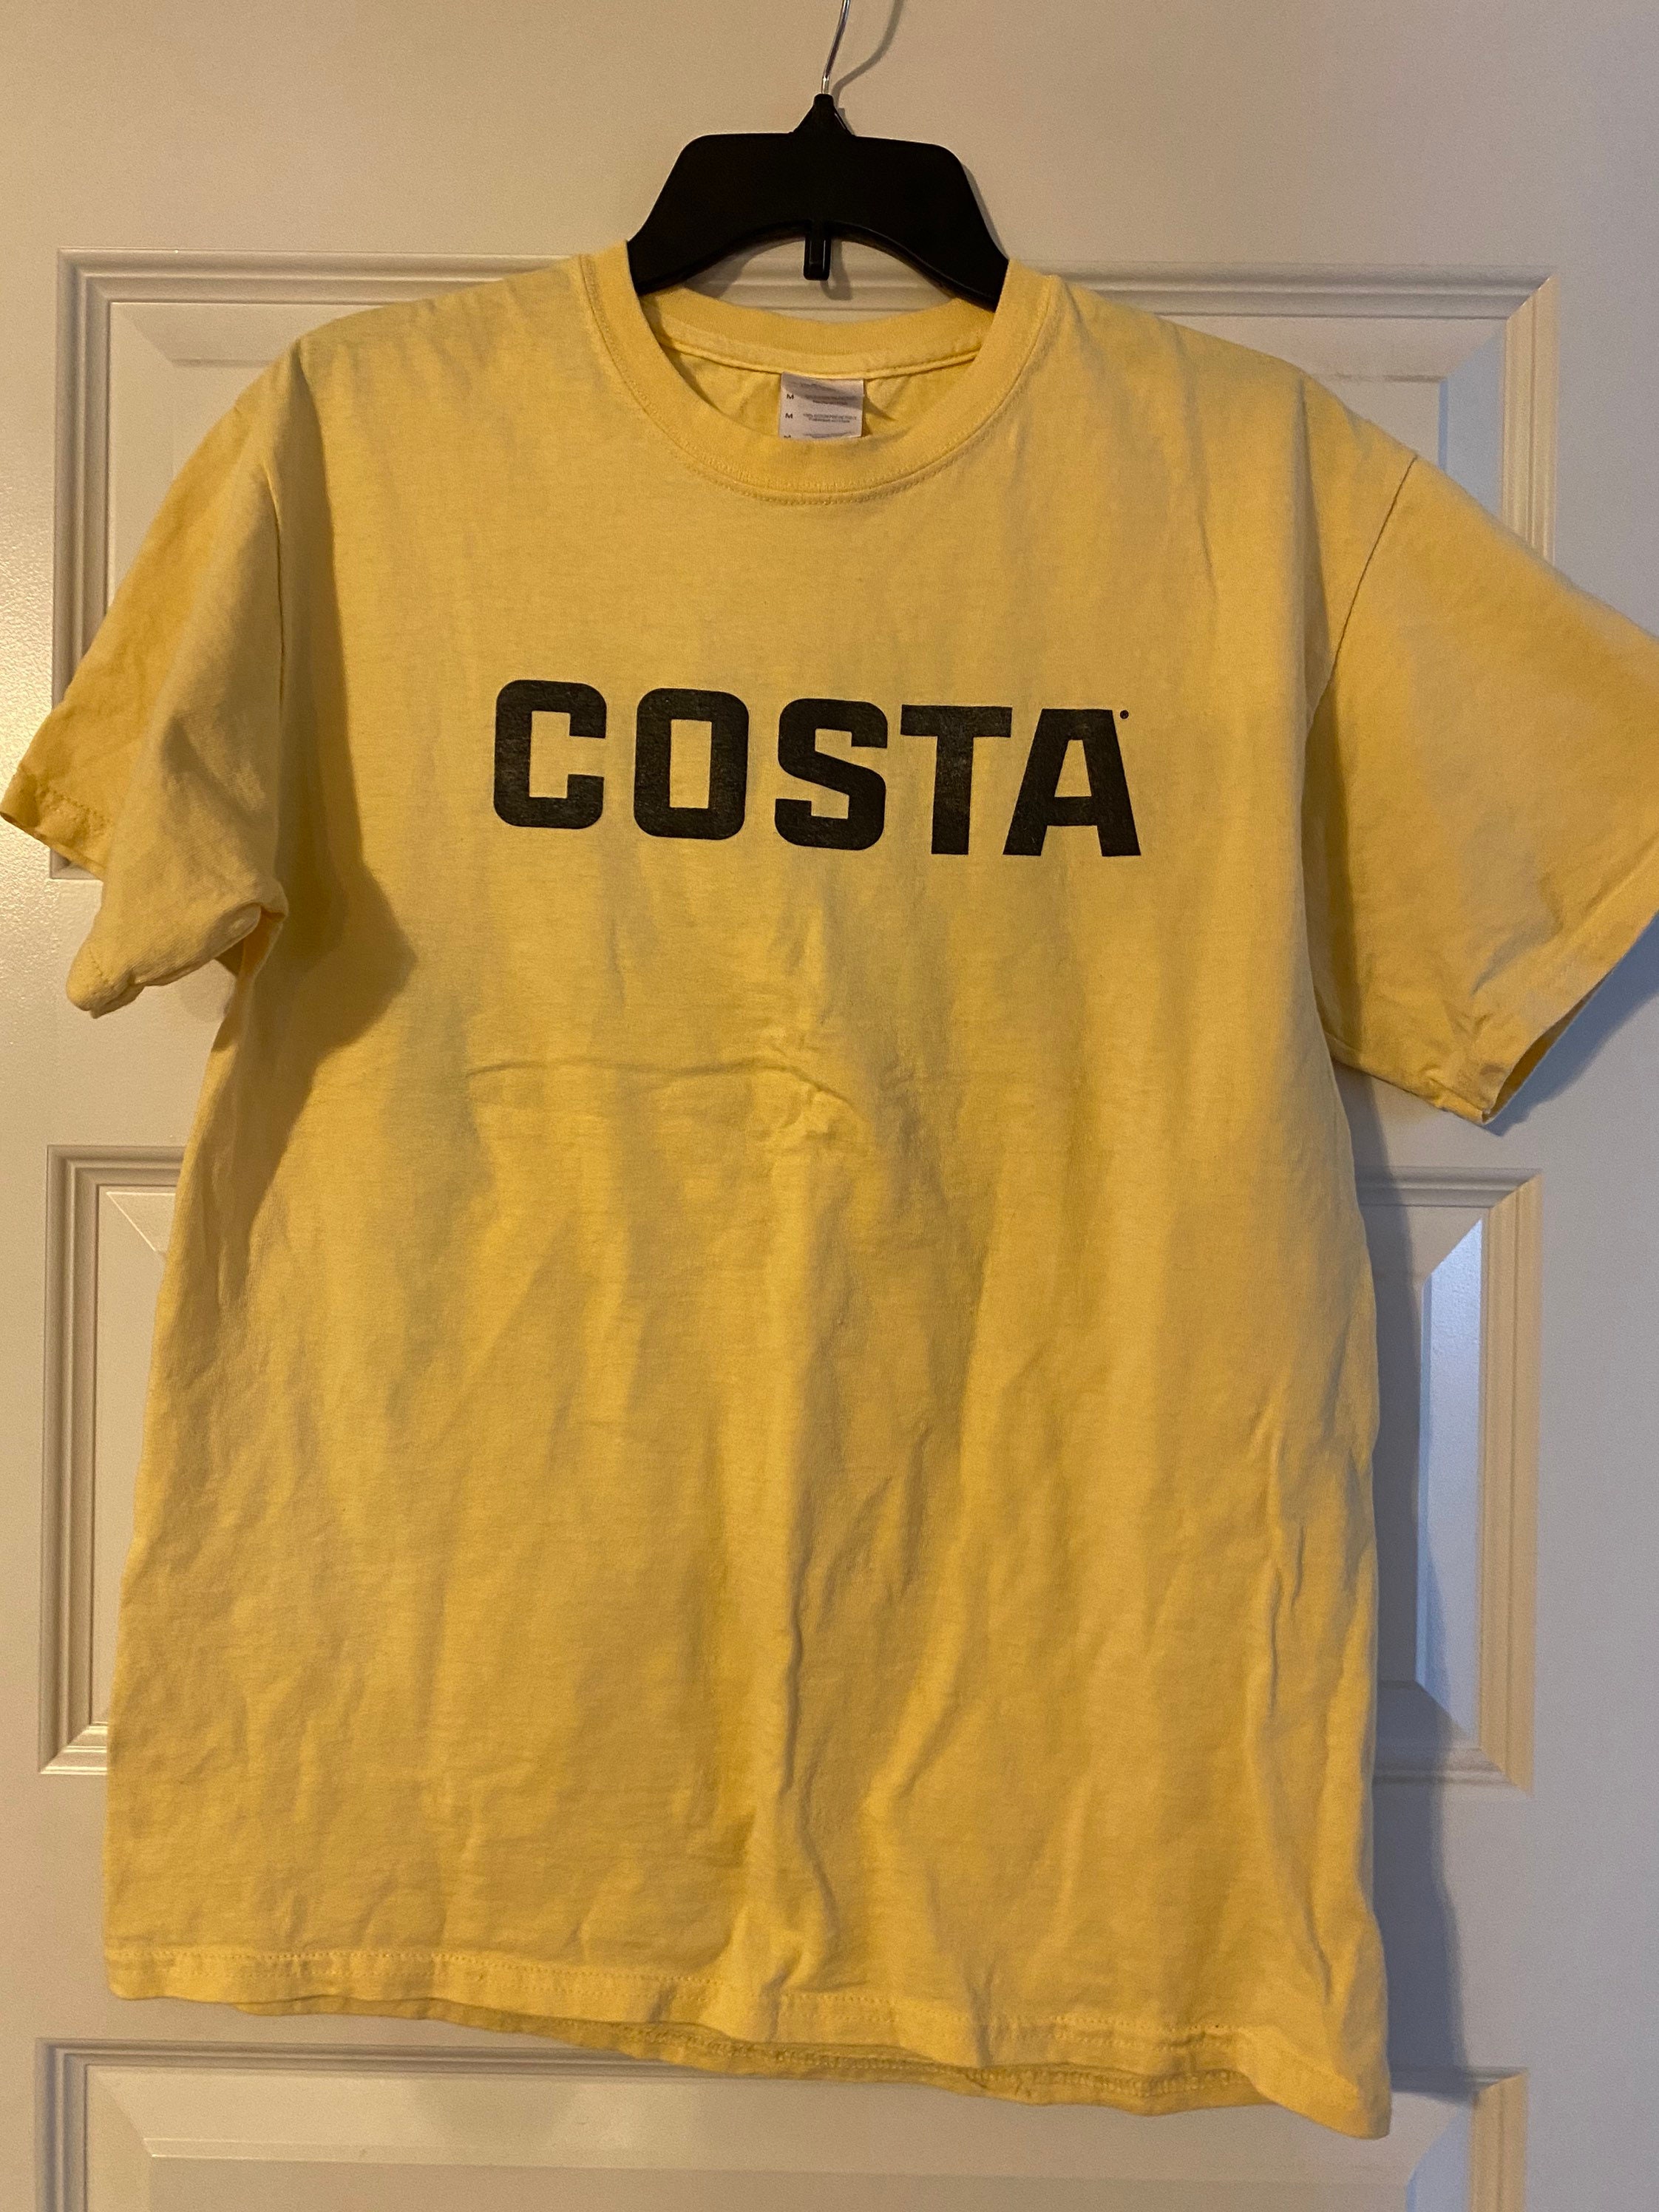 Costa Tshirt size L | Etsy